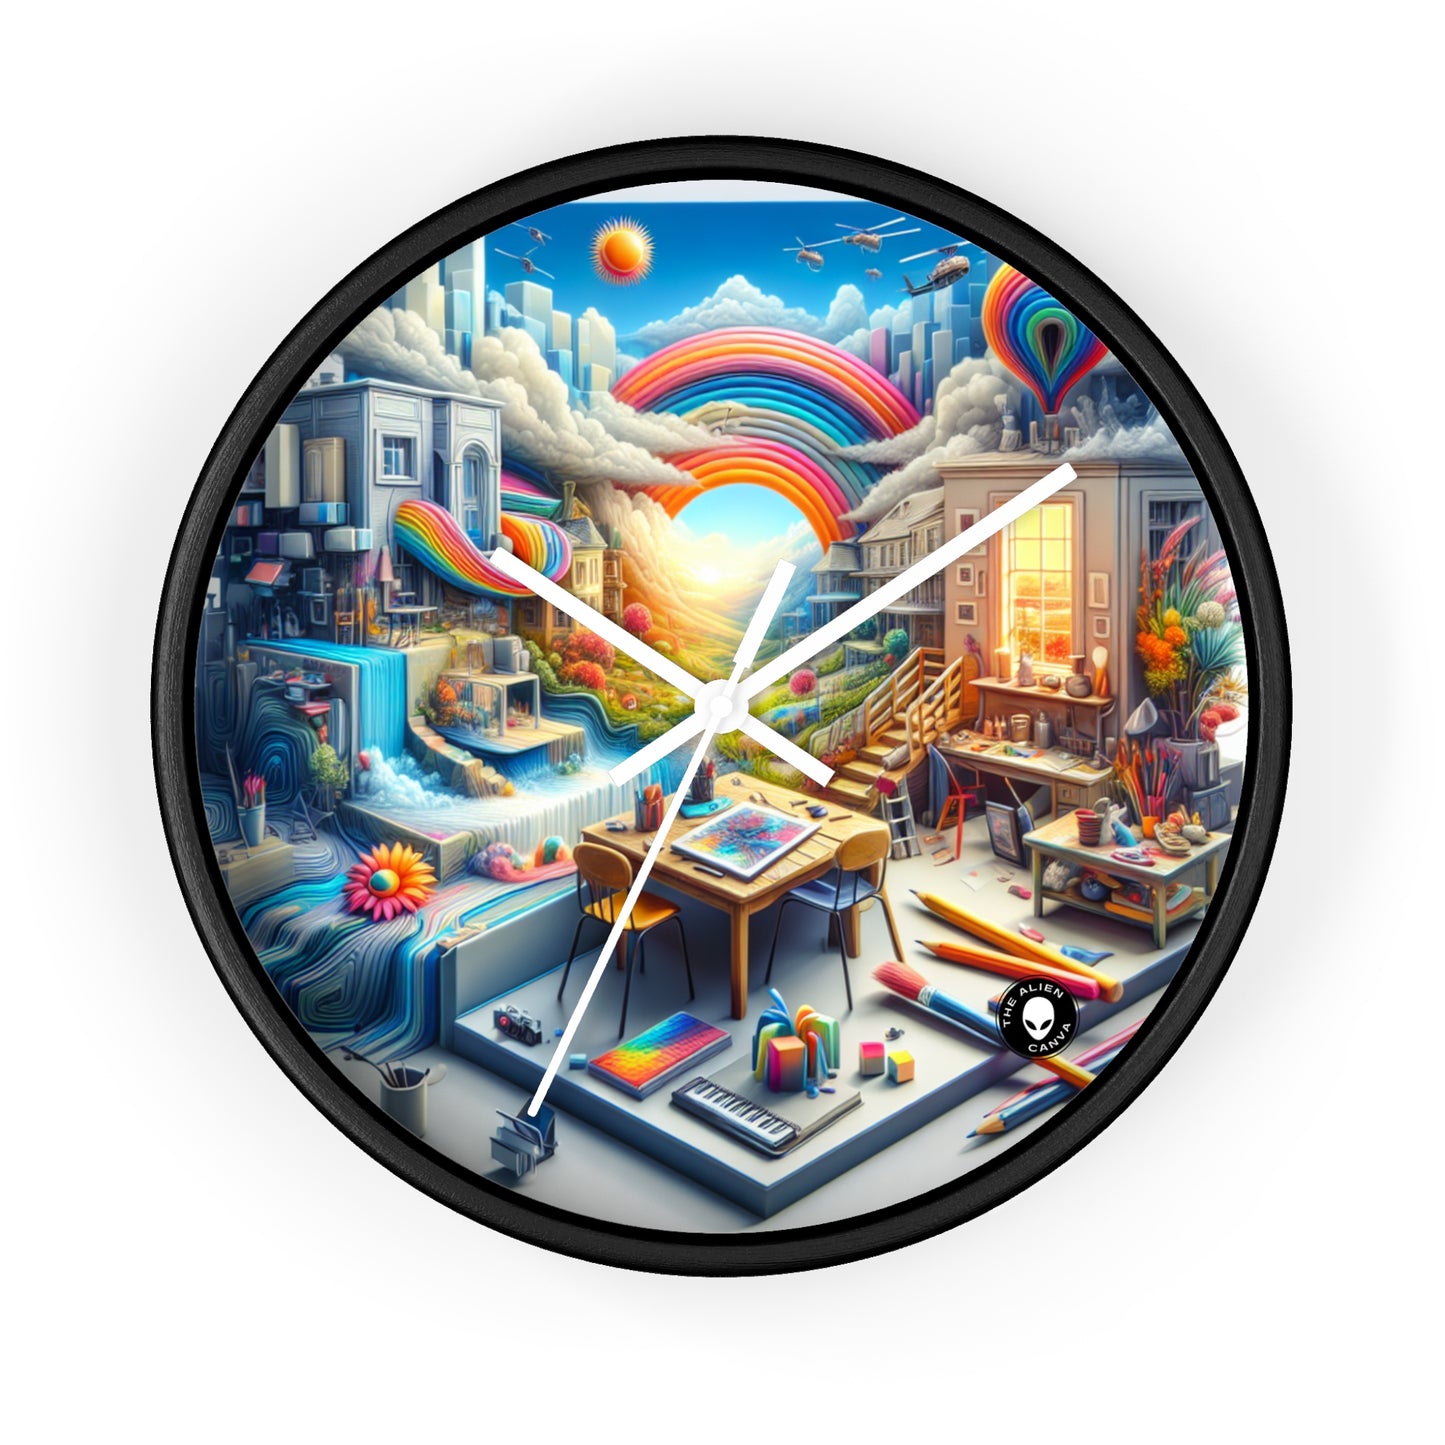 « Fusion futuriste : un paysage urbain simulationniste » - Le simulationnisme de l'horloge murale extraterrestre